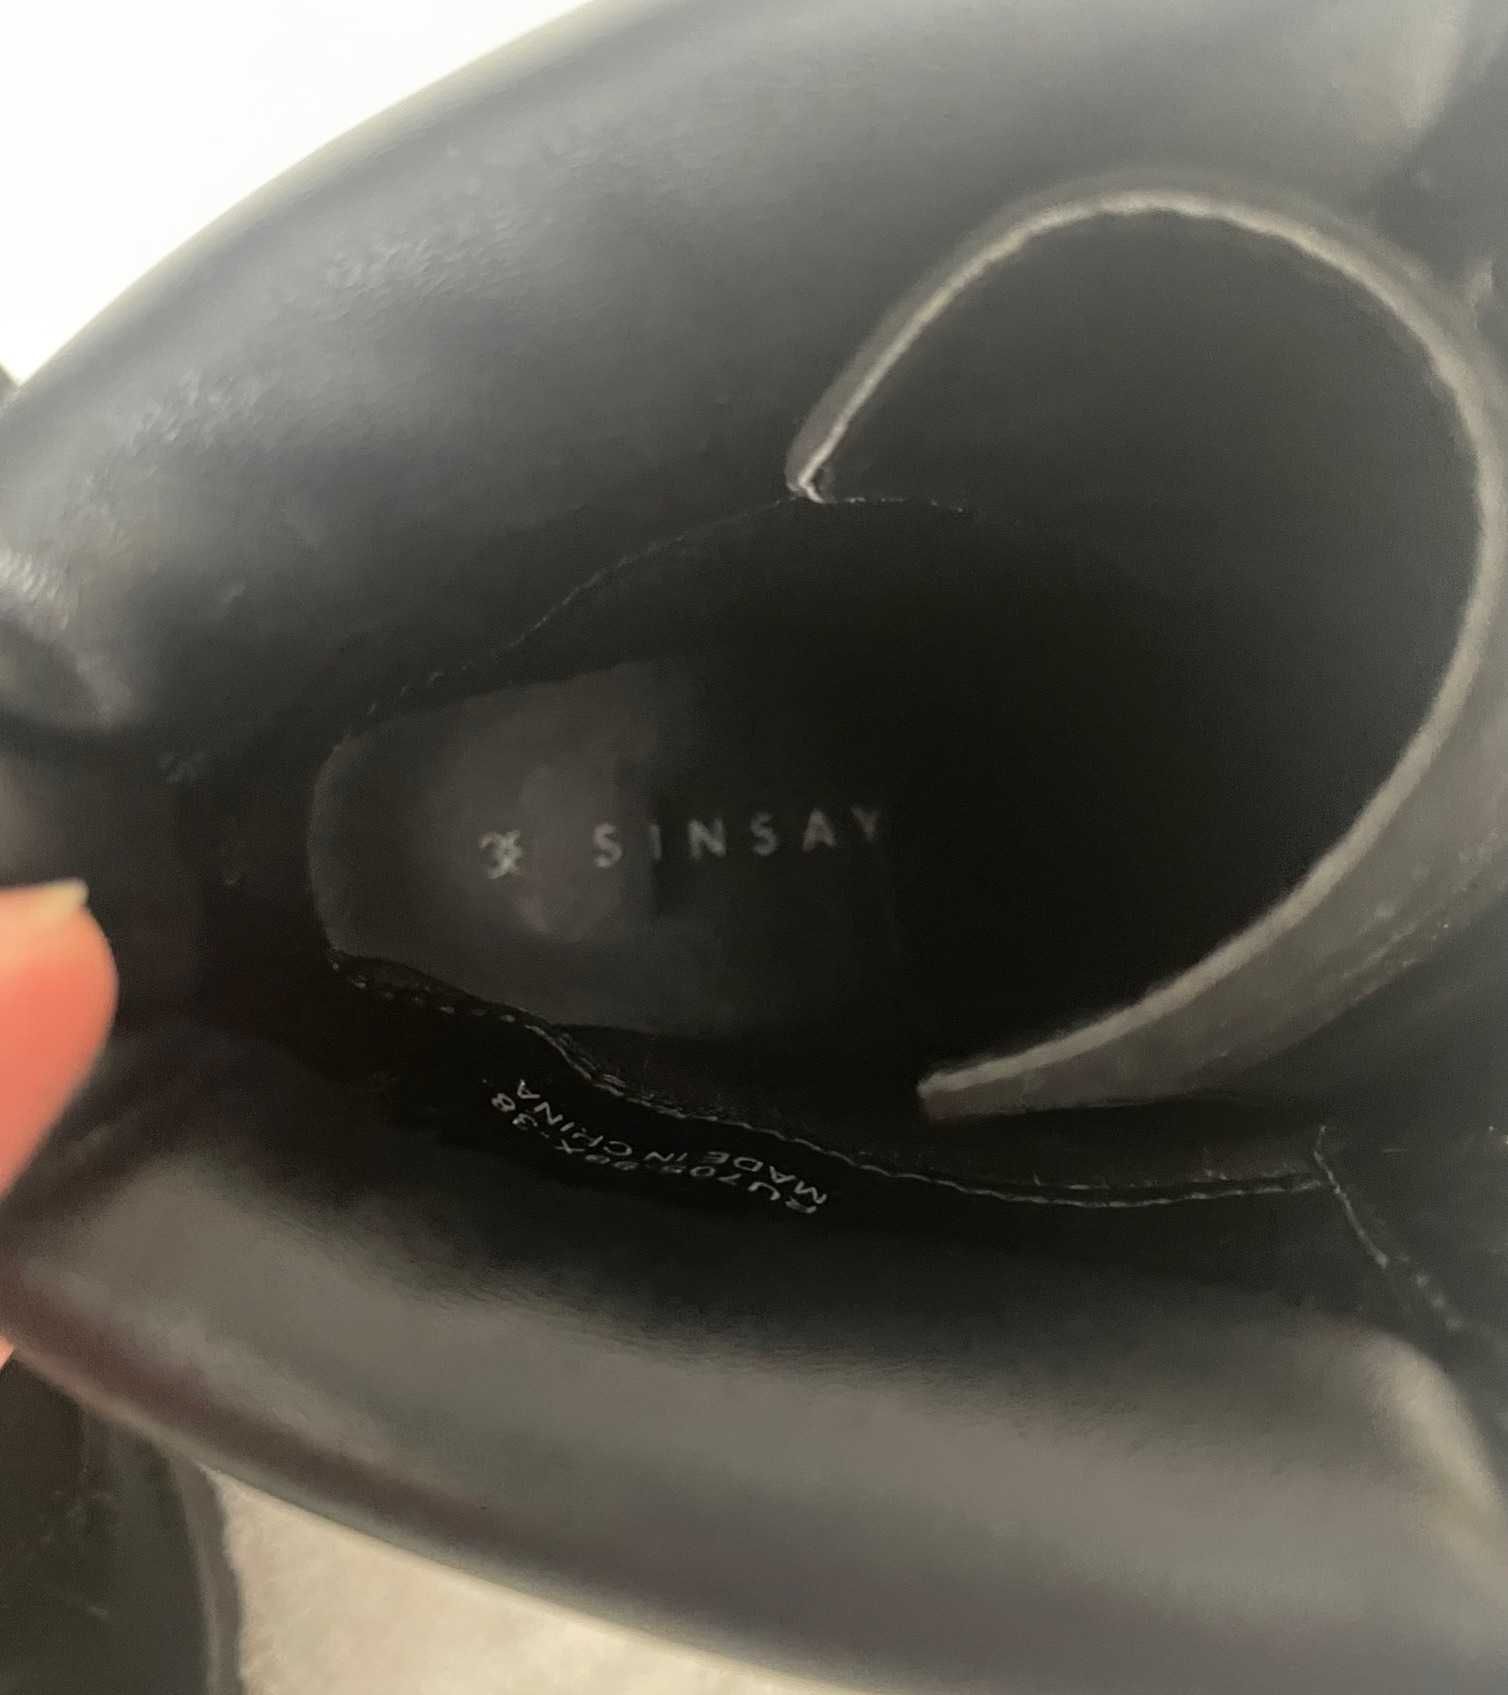 Sinsay buty damskie za kostkę roz 38 czarne nubuk syntetyczny